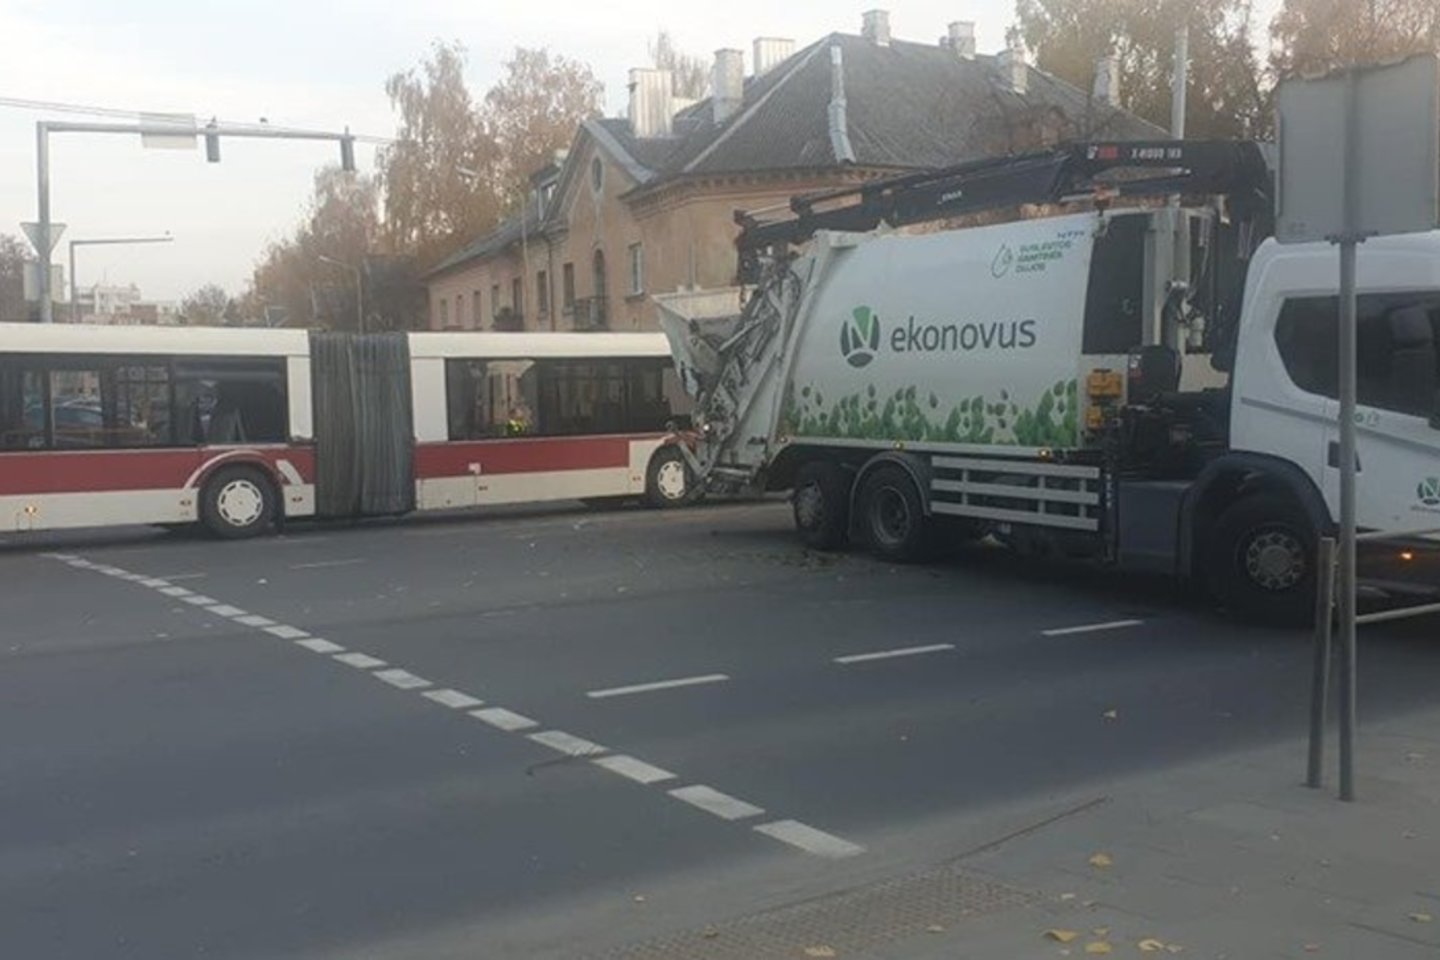  Vilniuje susidūrė autobusas ir šiukšliavežis, yra nukentėjusių.<br> Facebook/Reidas Vilniuje II/Andres O. nuotr.